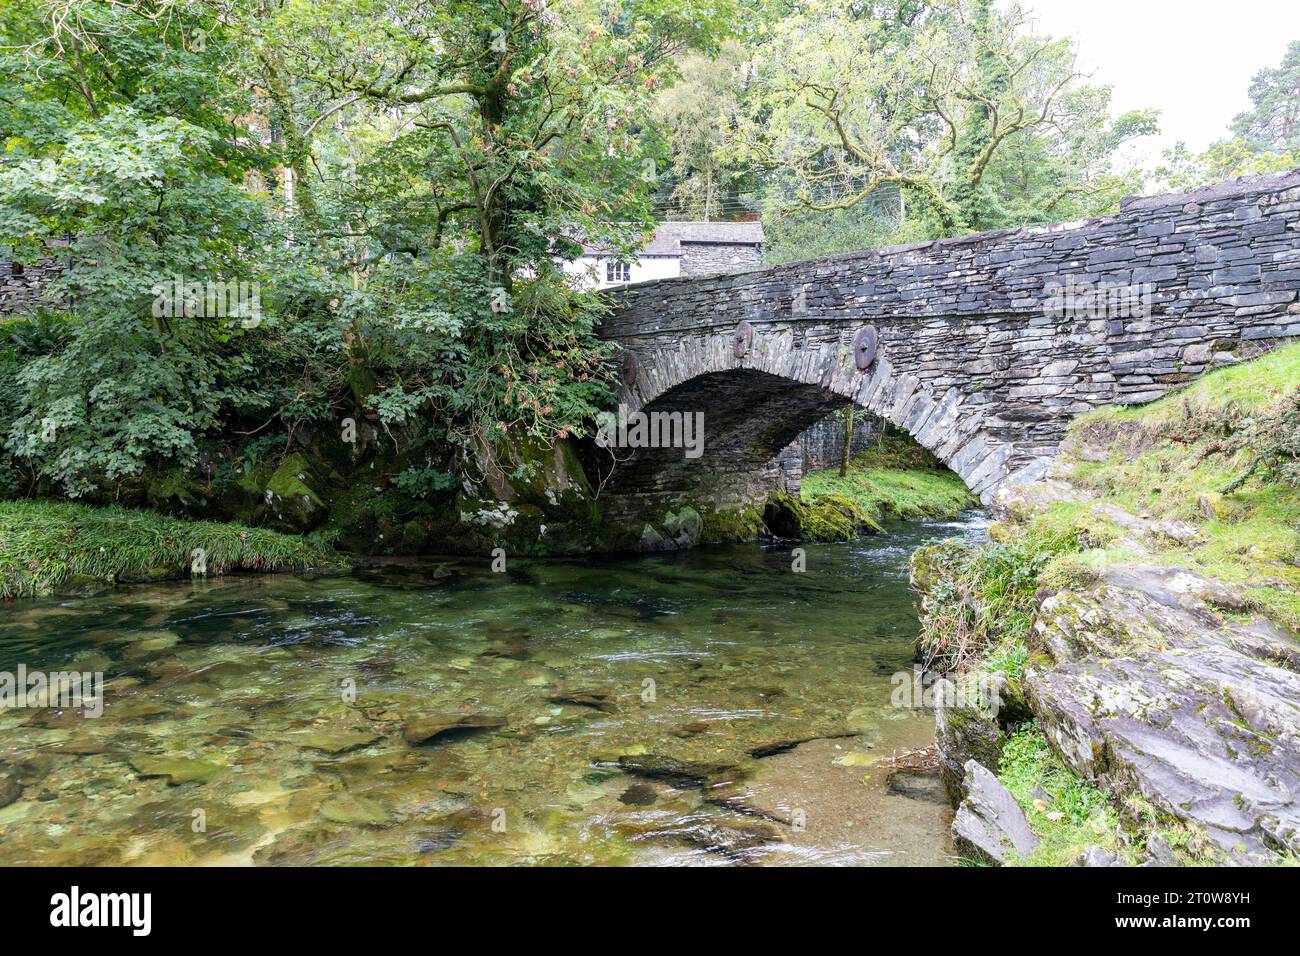 Elterwater Dorf und Brücke im Lake District, River Brathay fließt unter dieser denkmalgeschützten Brücke aus dem 18. Jahrhundert, Cumbria, England, Großbritannien Stockfoto